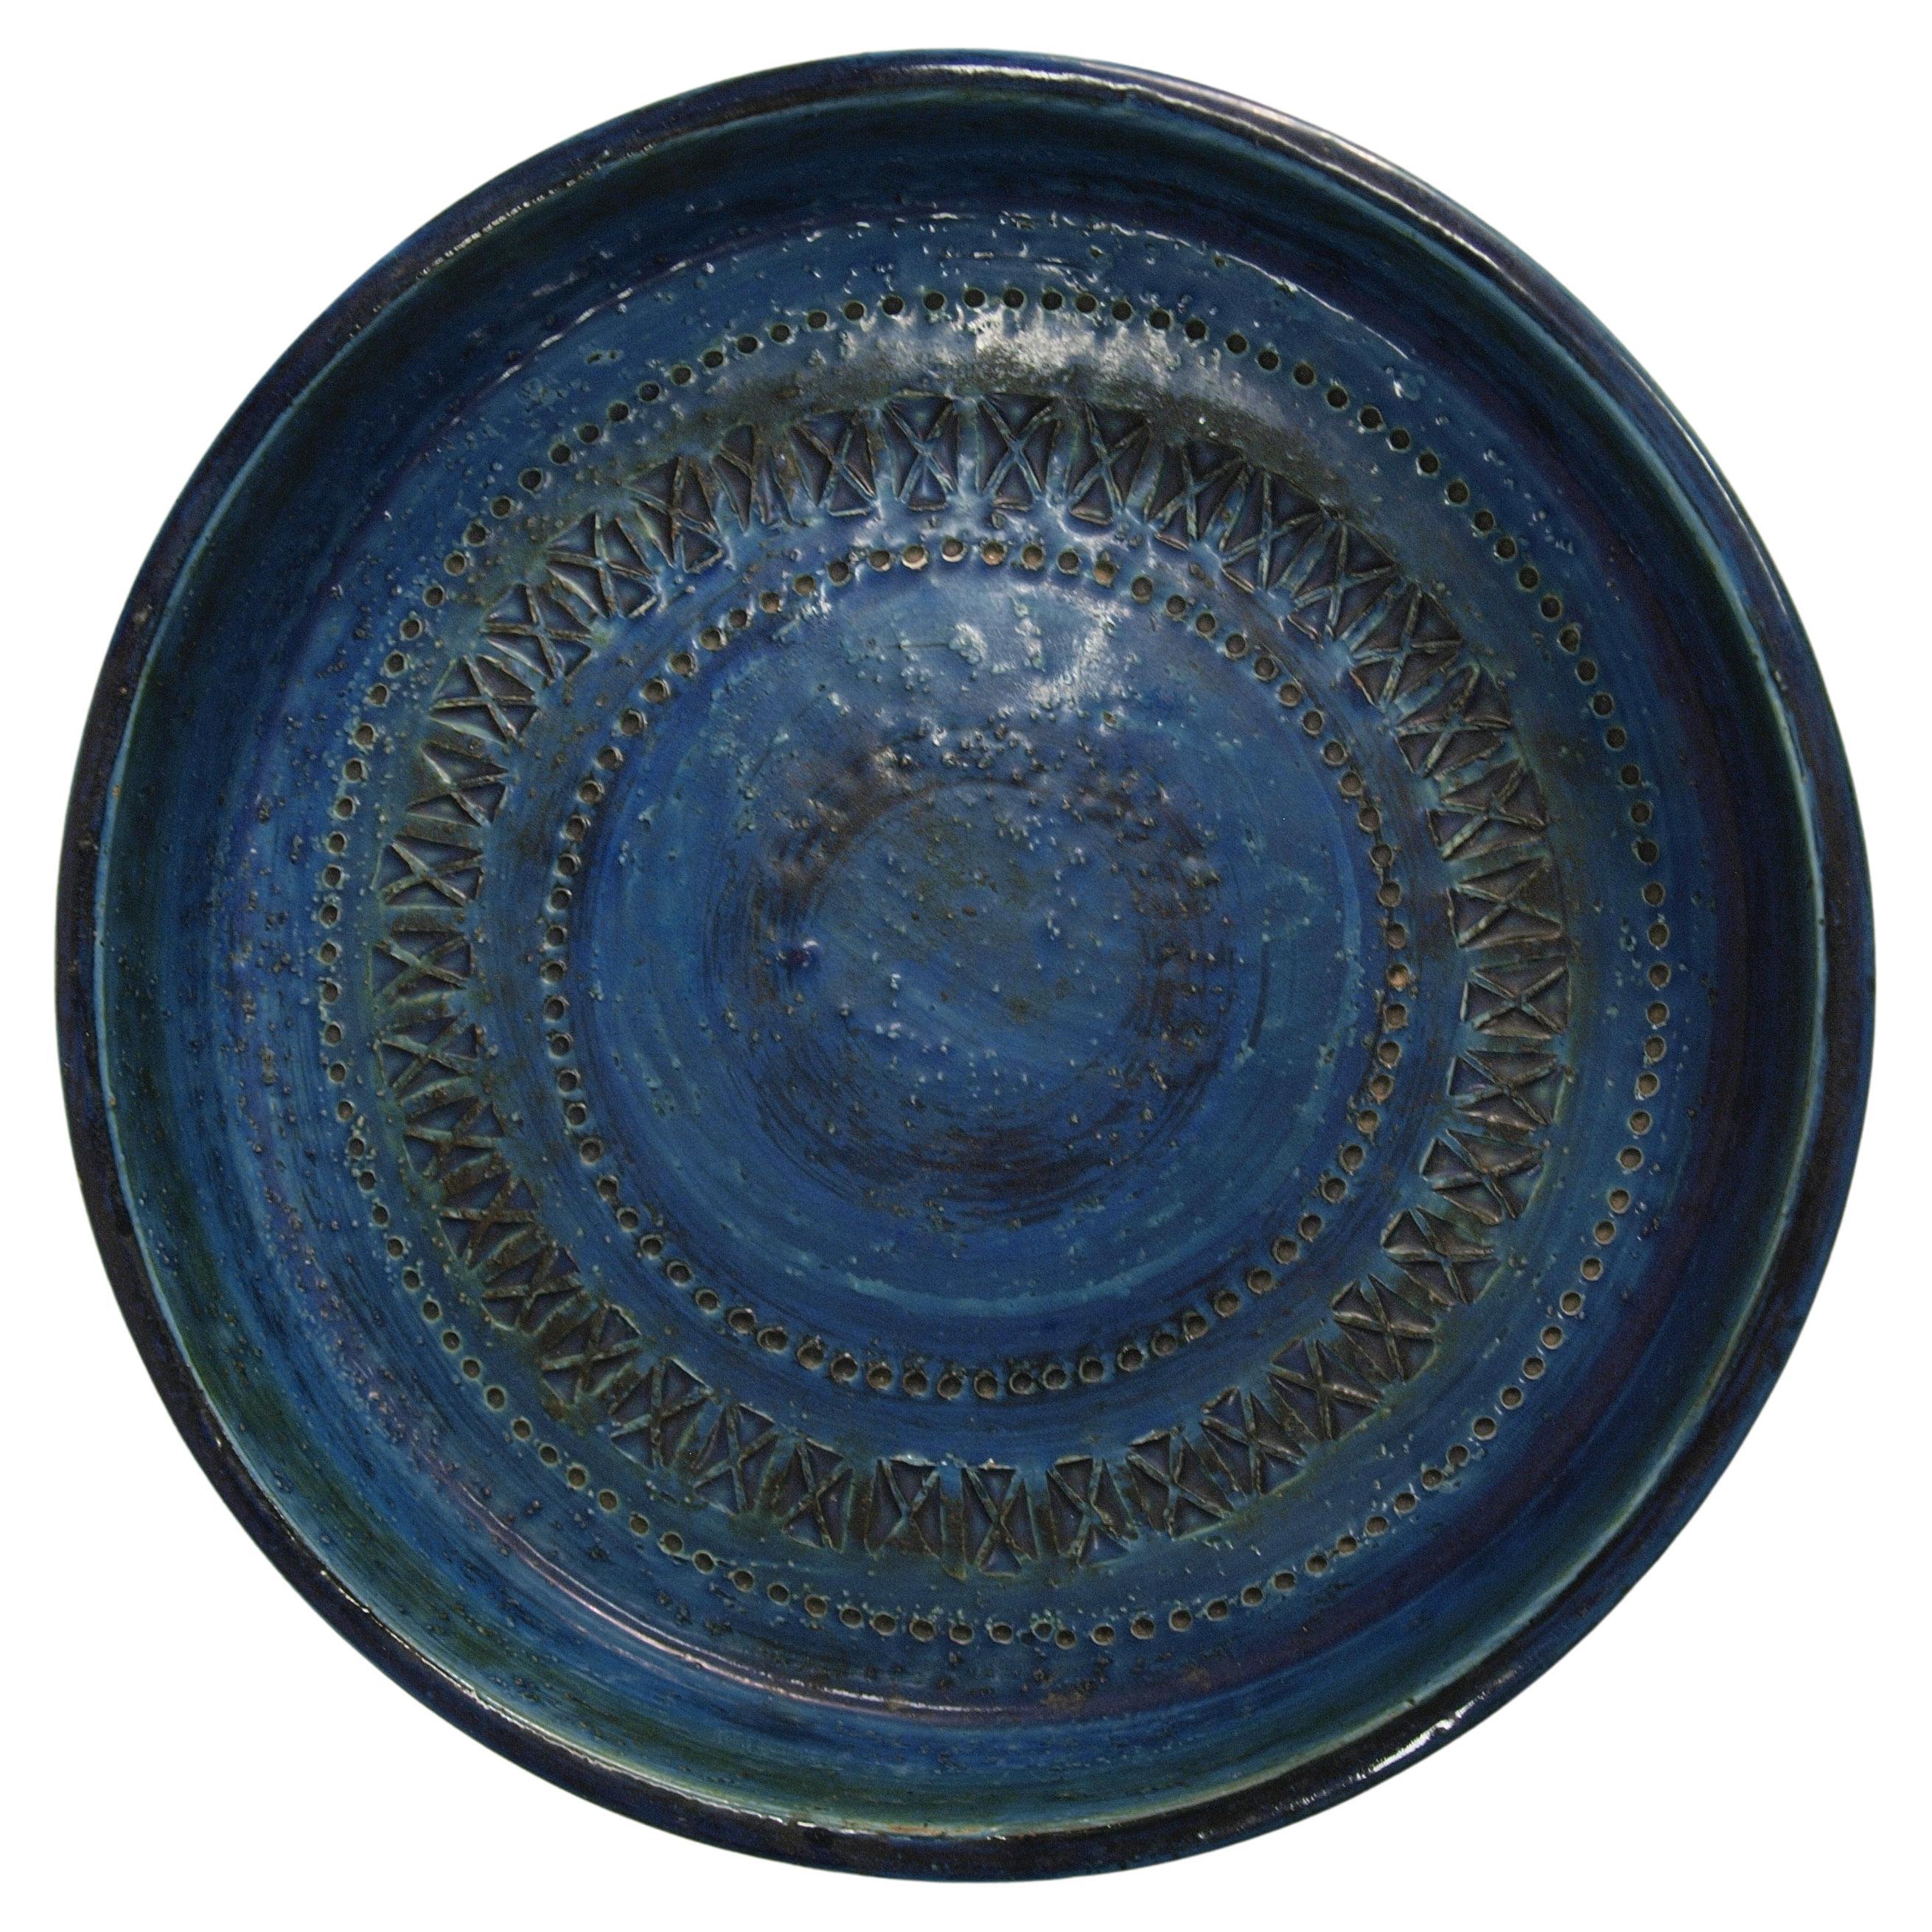 Aldo Londi runde Keramikschale, blau glasiert, Bitossi, Mitte 20. Jahrhundert, guter Zustand.